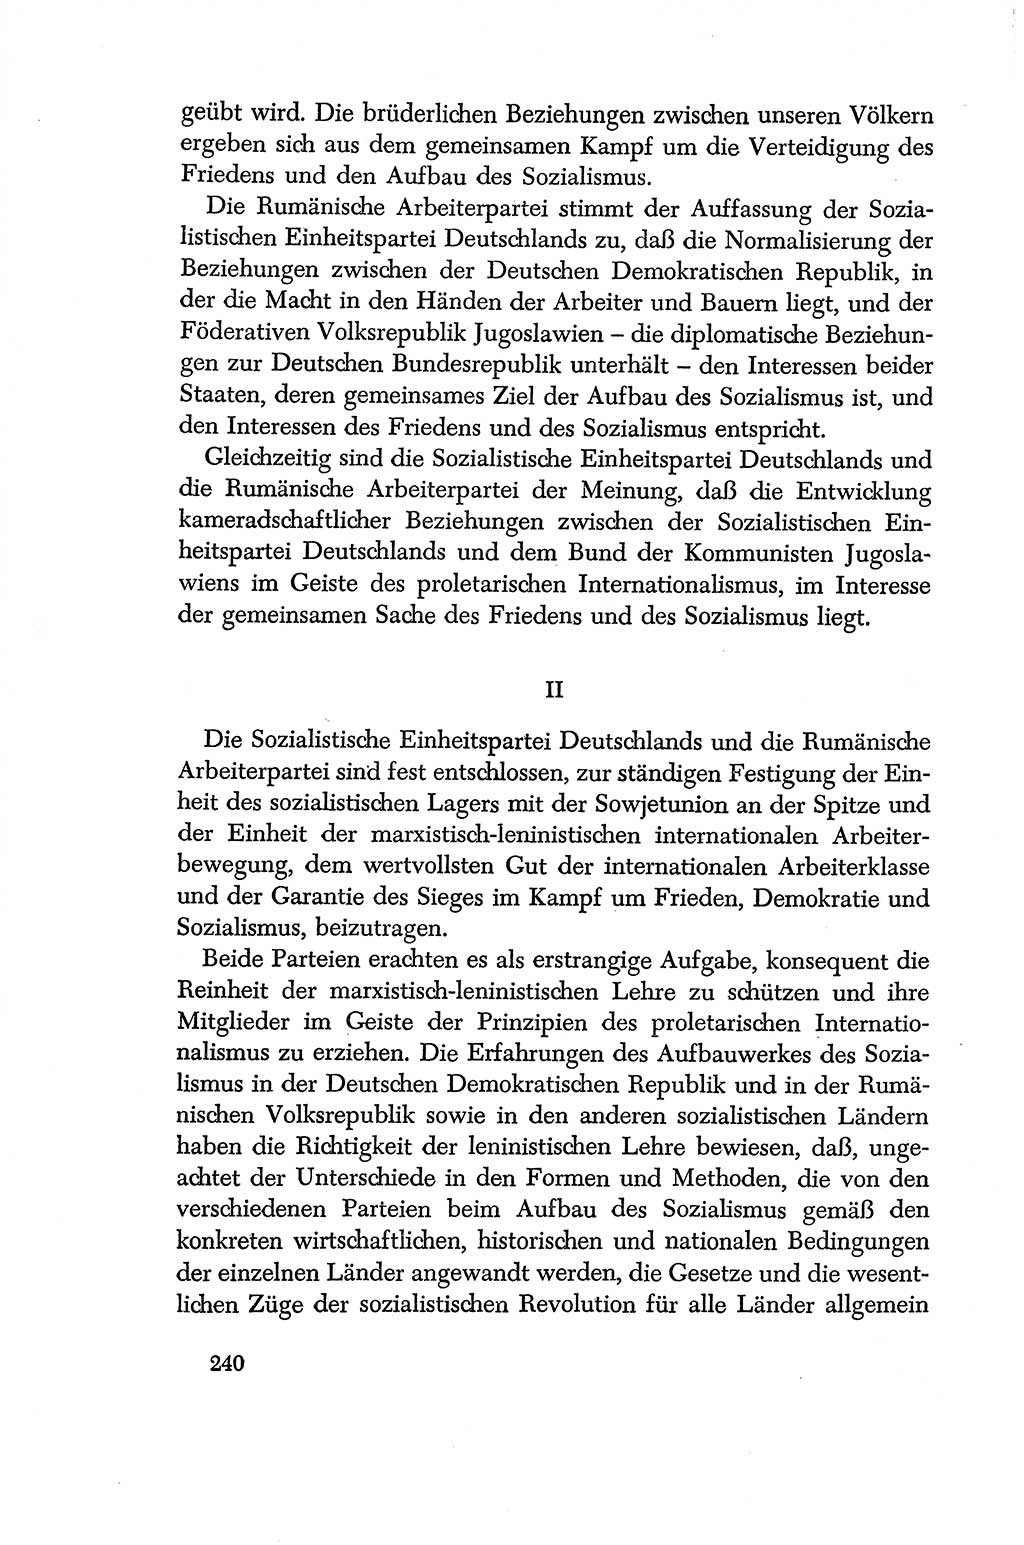 Dokumente der Sozialistischen Einheitspartei Deutschlands (SED) [Deutsche Demokratische Republik (DDR)] 1956-1957, Seite 240 (Dok. SED DDR 1956-1957, S. 240)